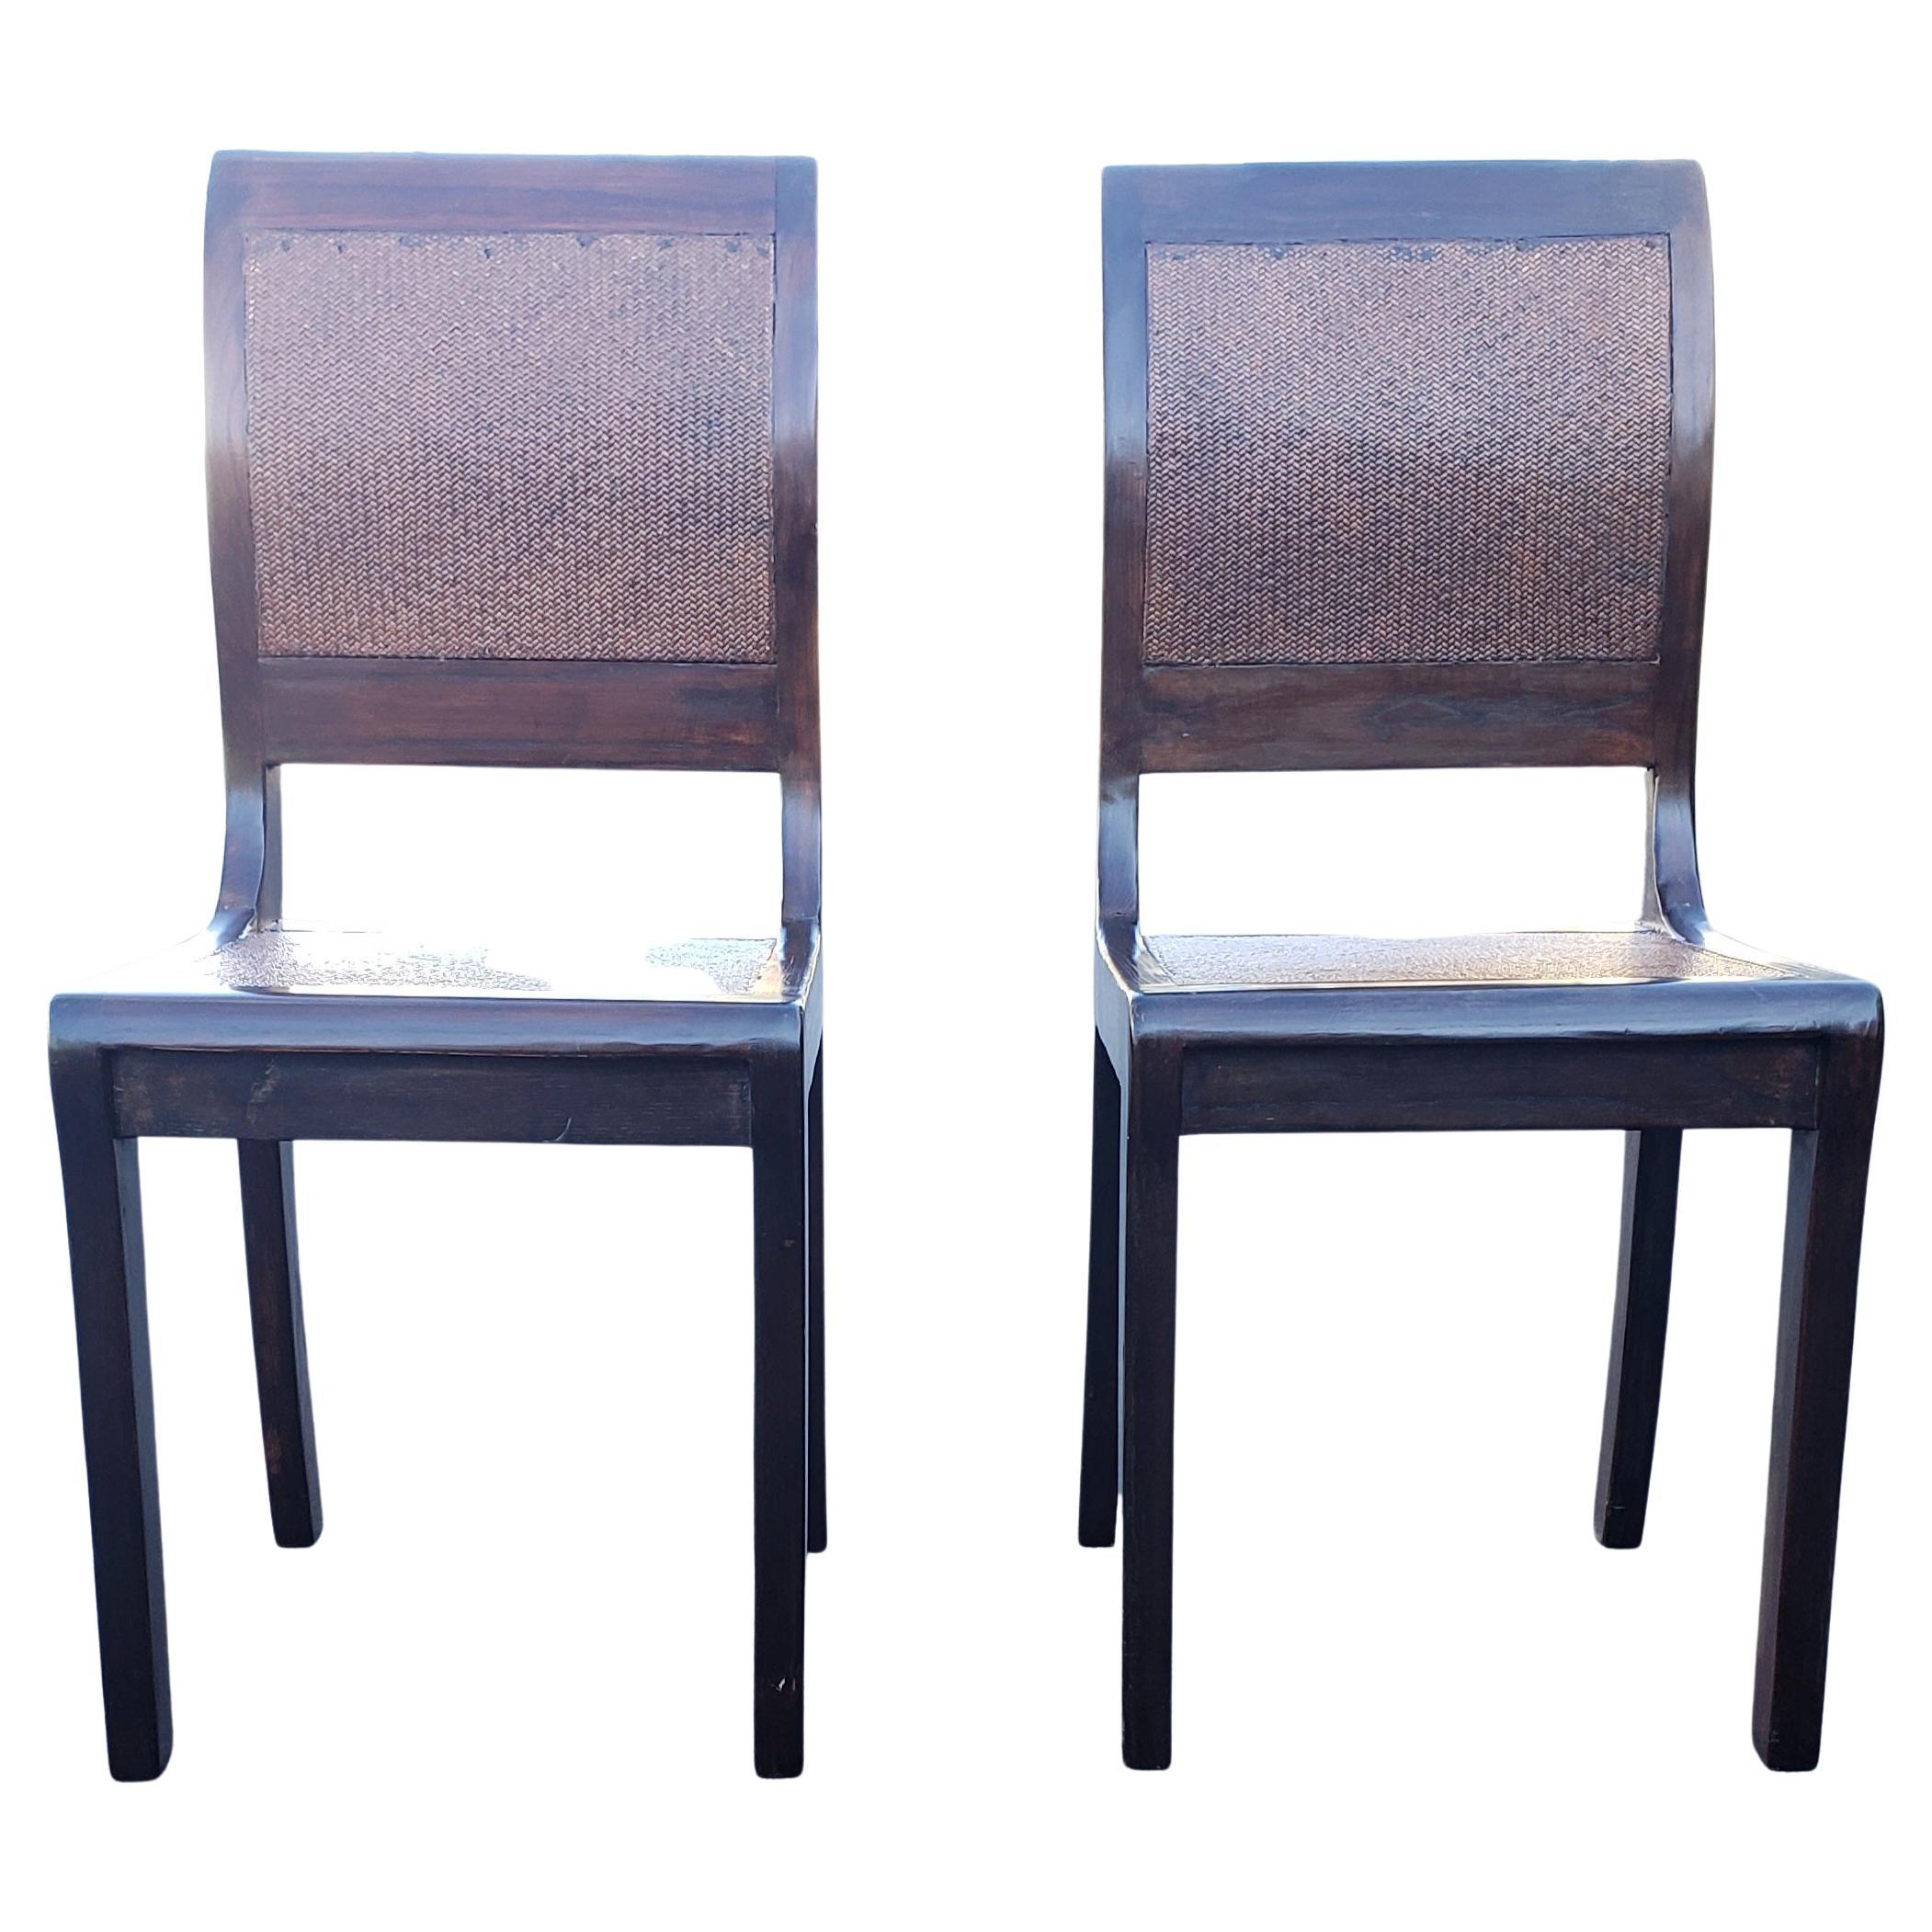 Une jolie paire de chaises en bois de rose et osier tressé avec siège et dossier en bois dur.
Mesure 16